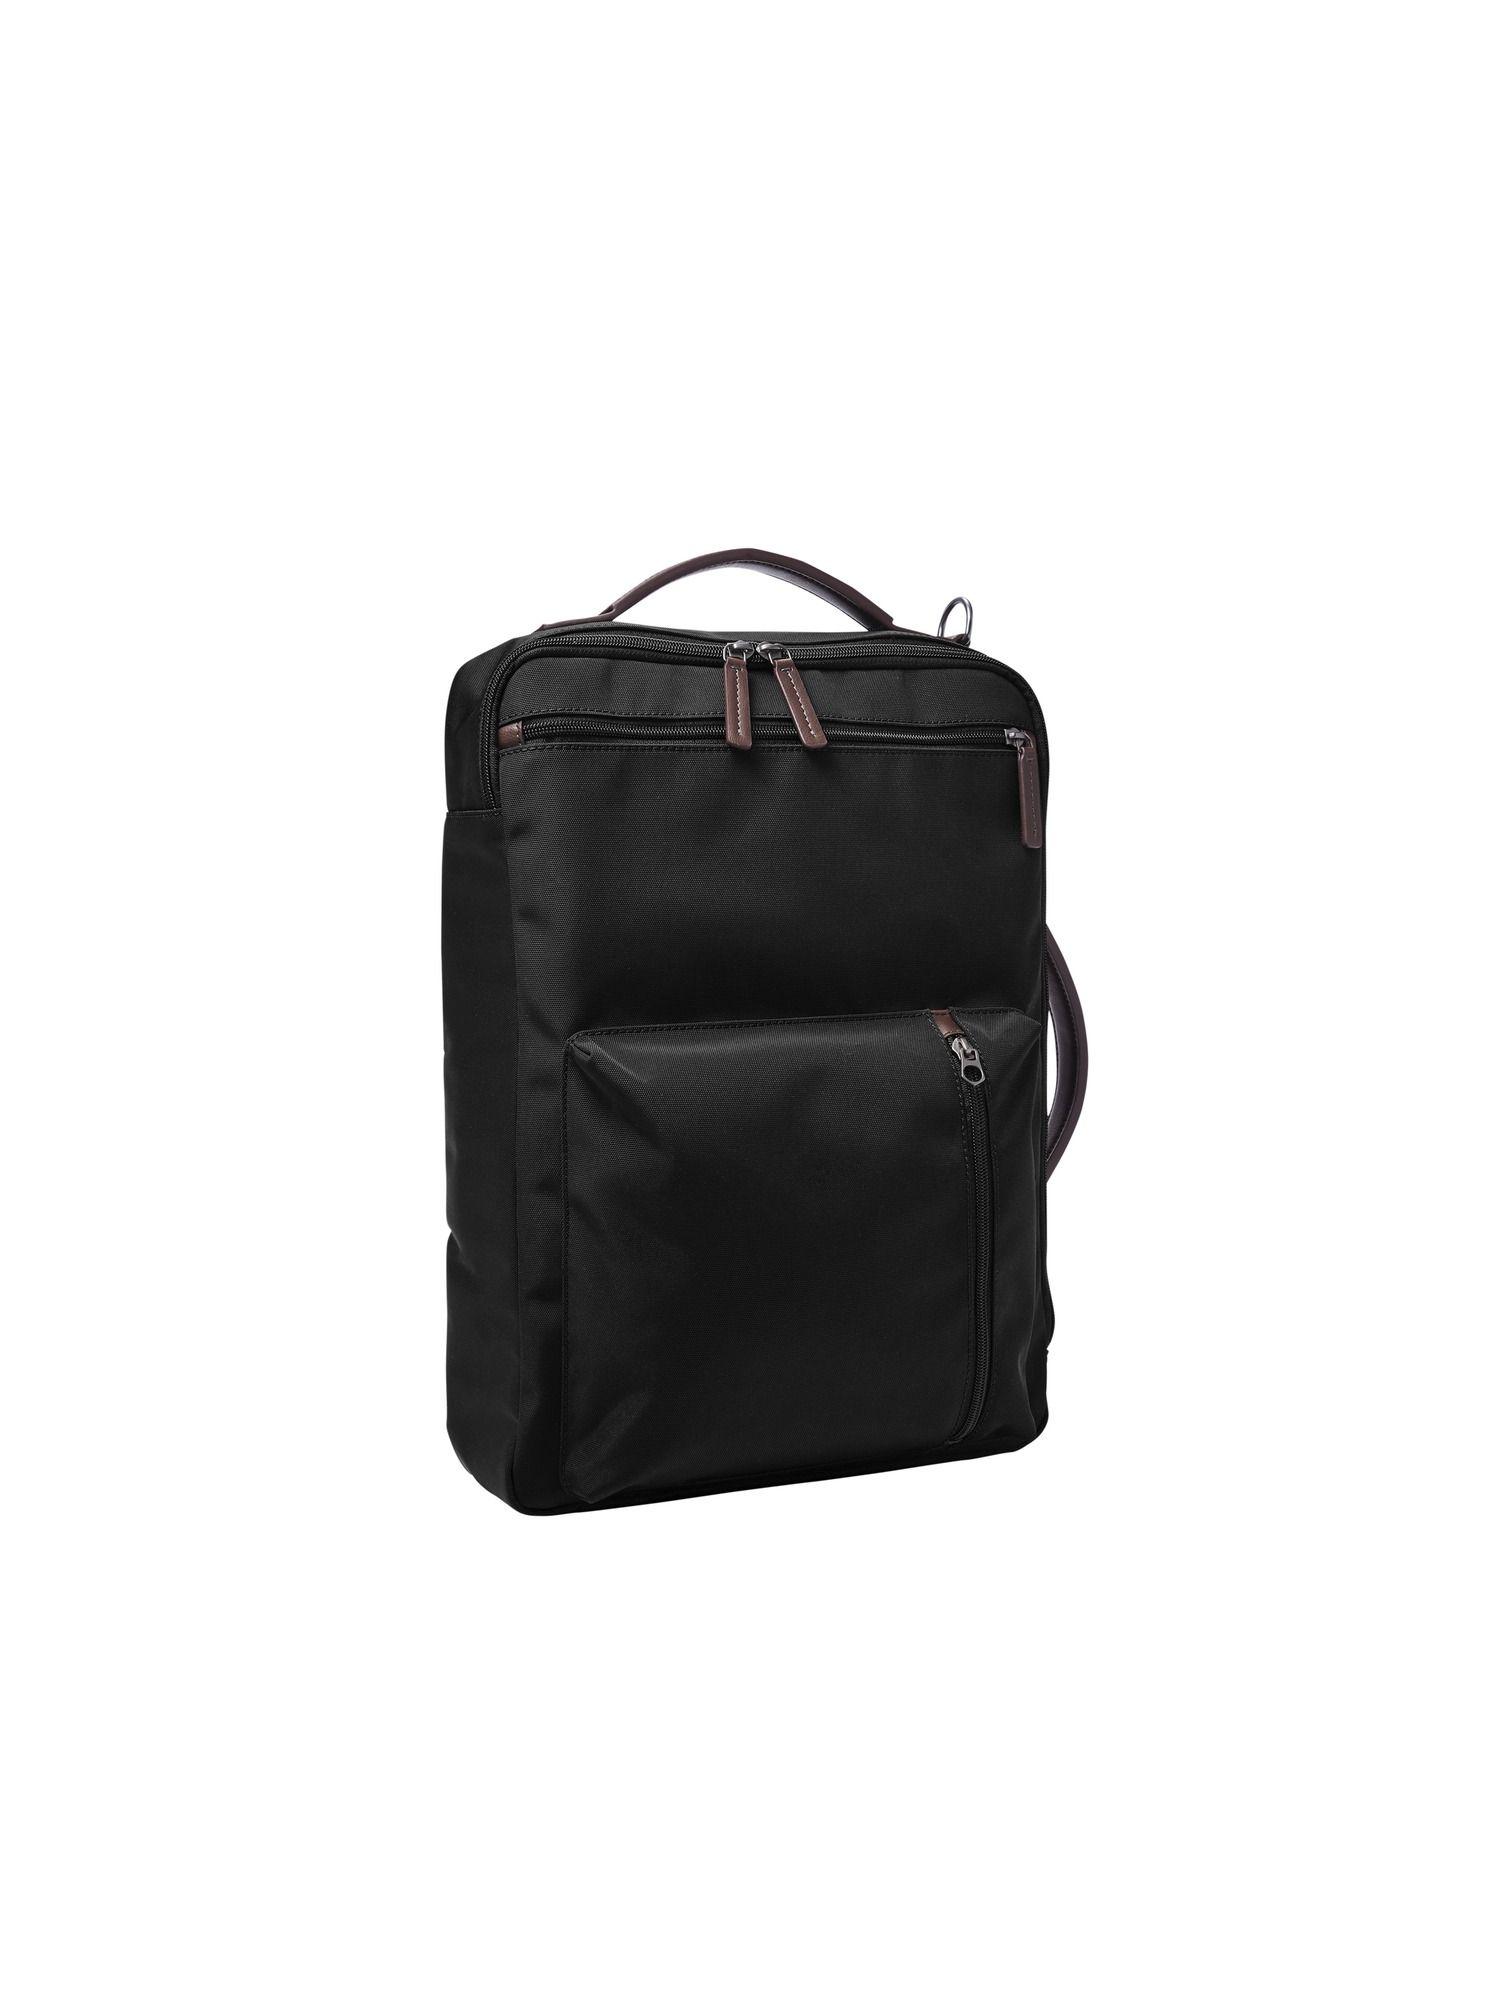 buckner black backpack mbg9519001